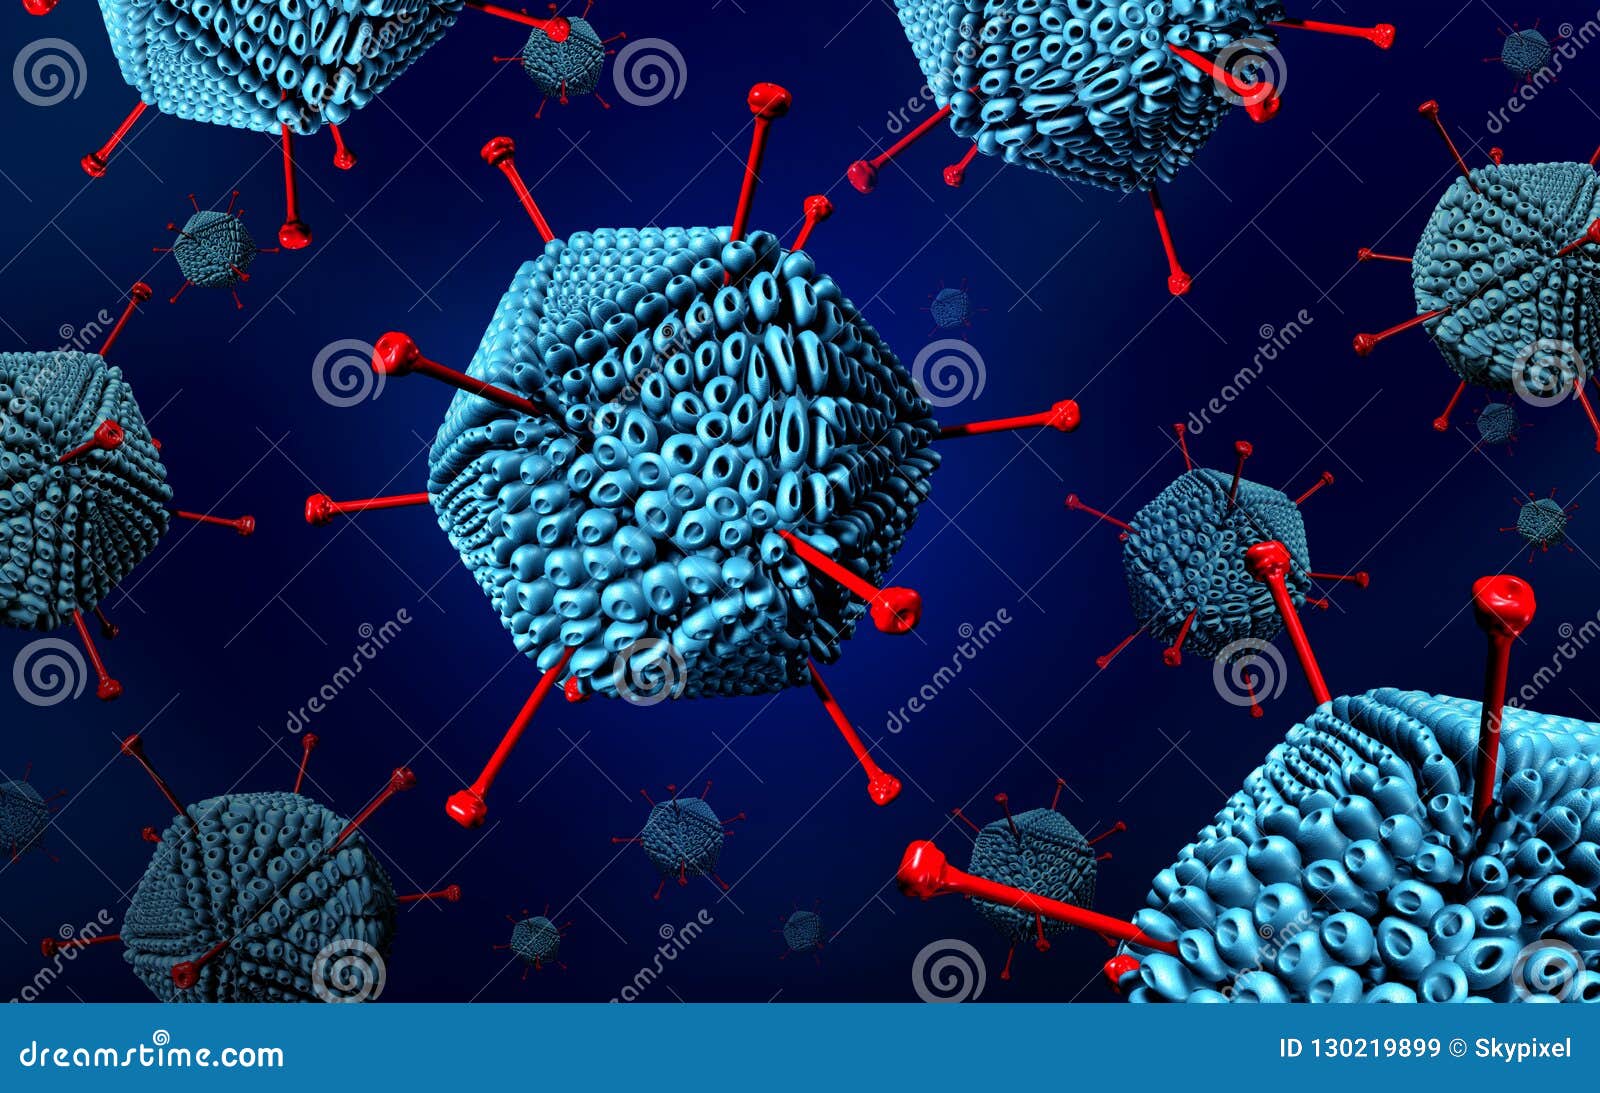 adenovirus disease